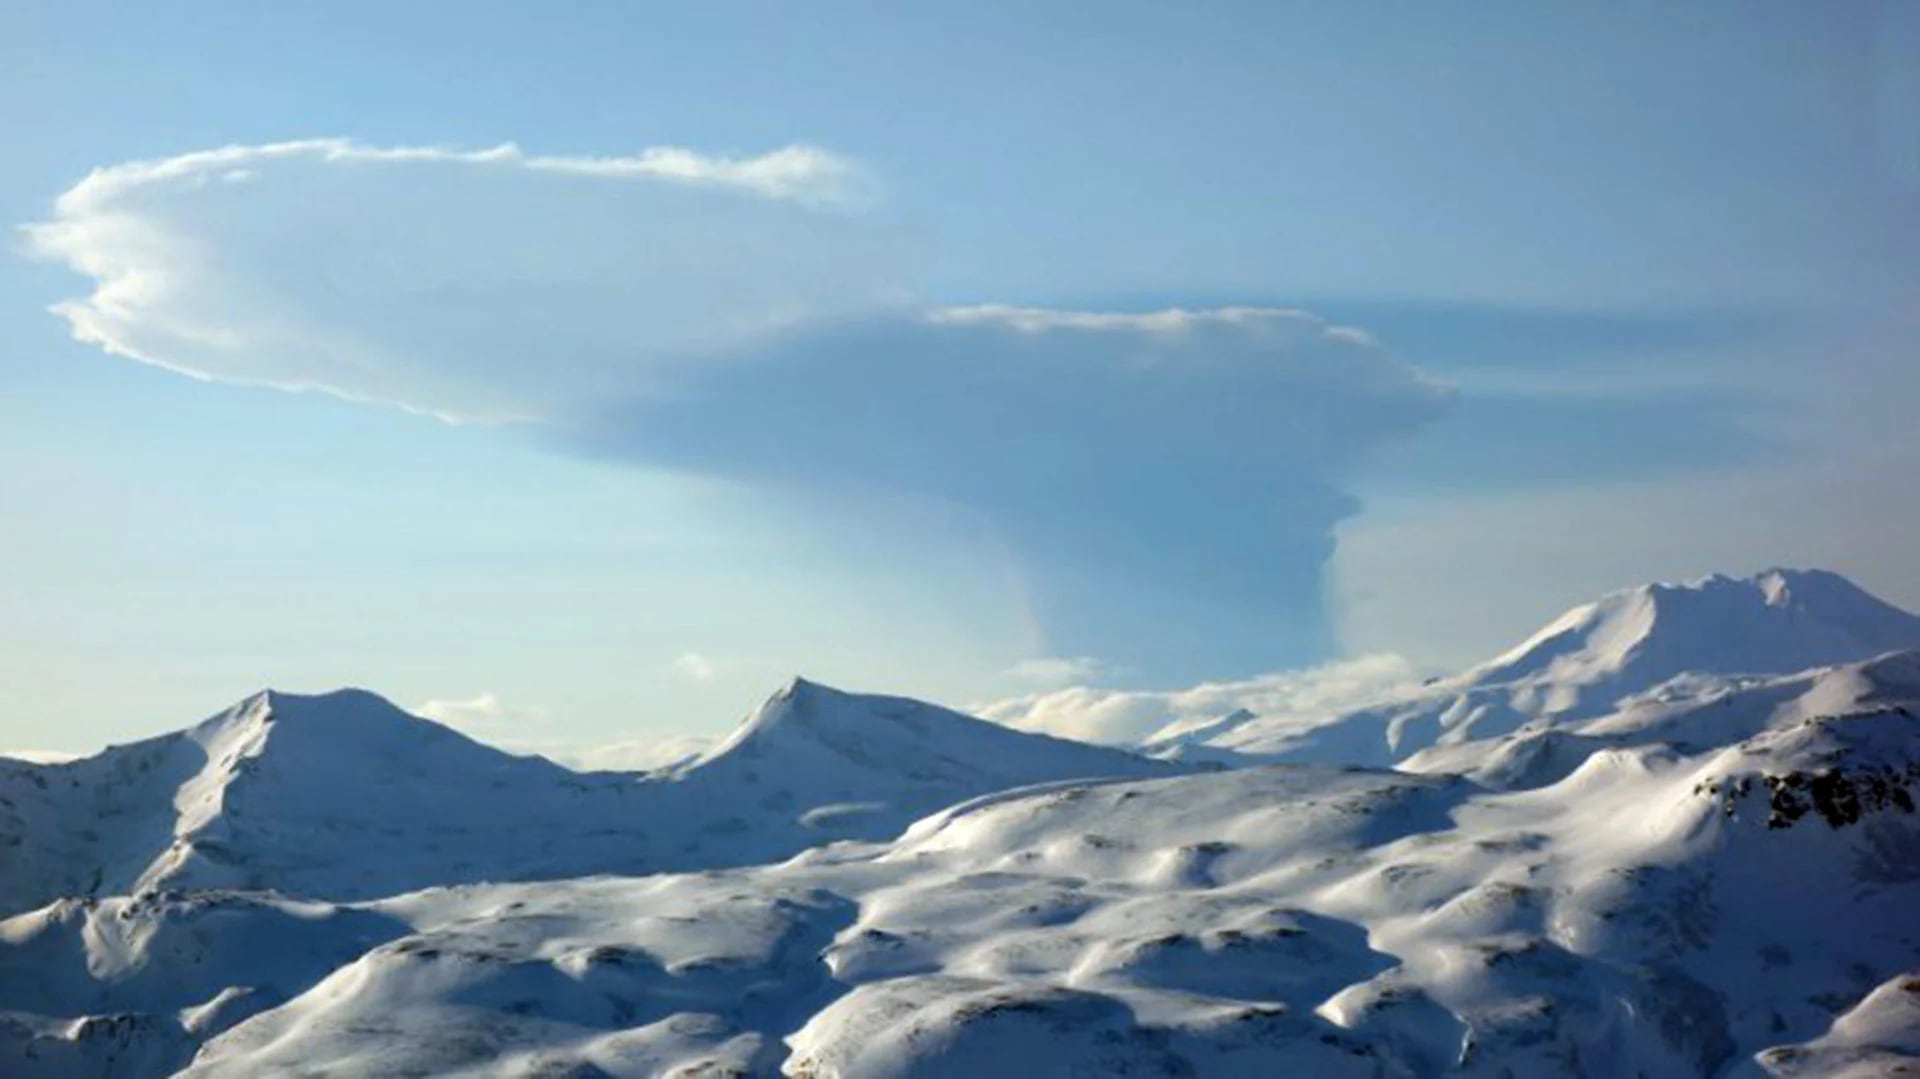 El volcán Bogoslof emitió una densa nube de cenizas. Así se veía desde la vecina isla de Unalaska